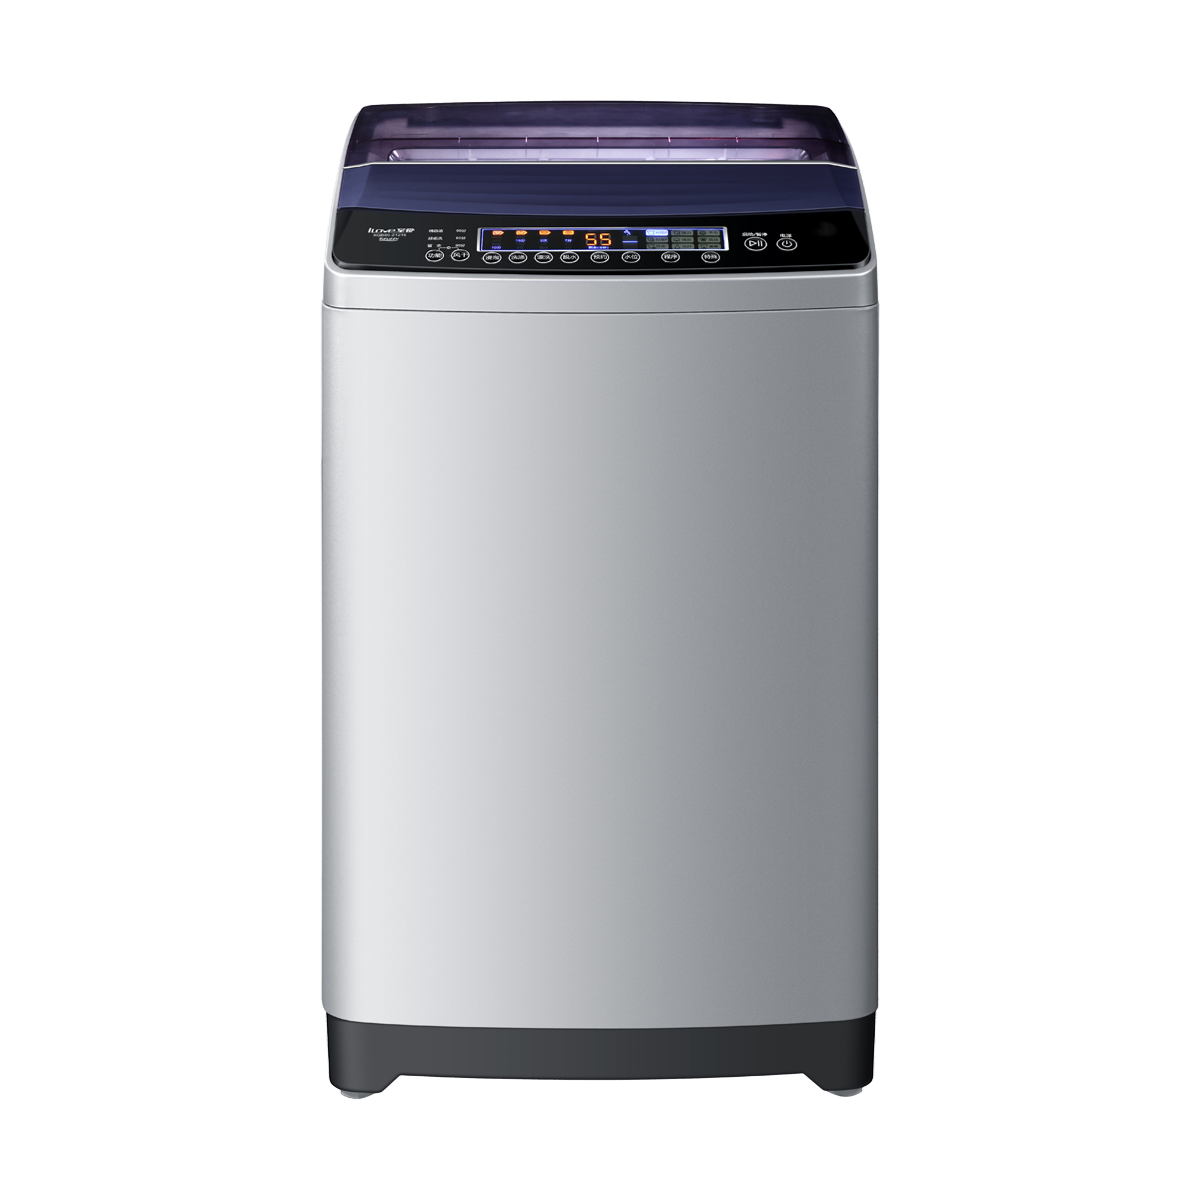 海尔Haier洗衣机 XQS75-Z118 说明书